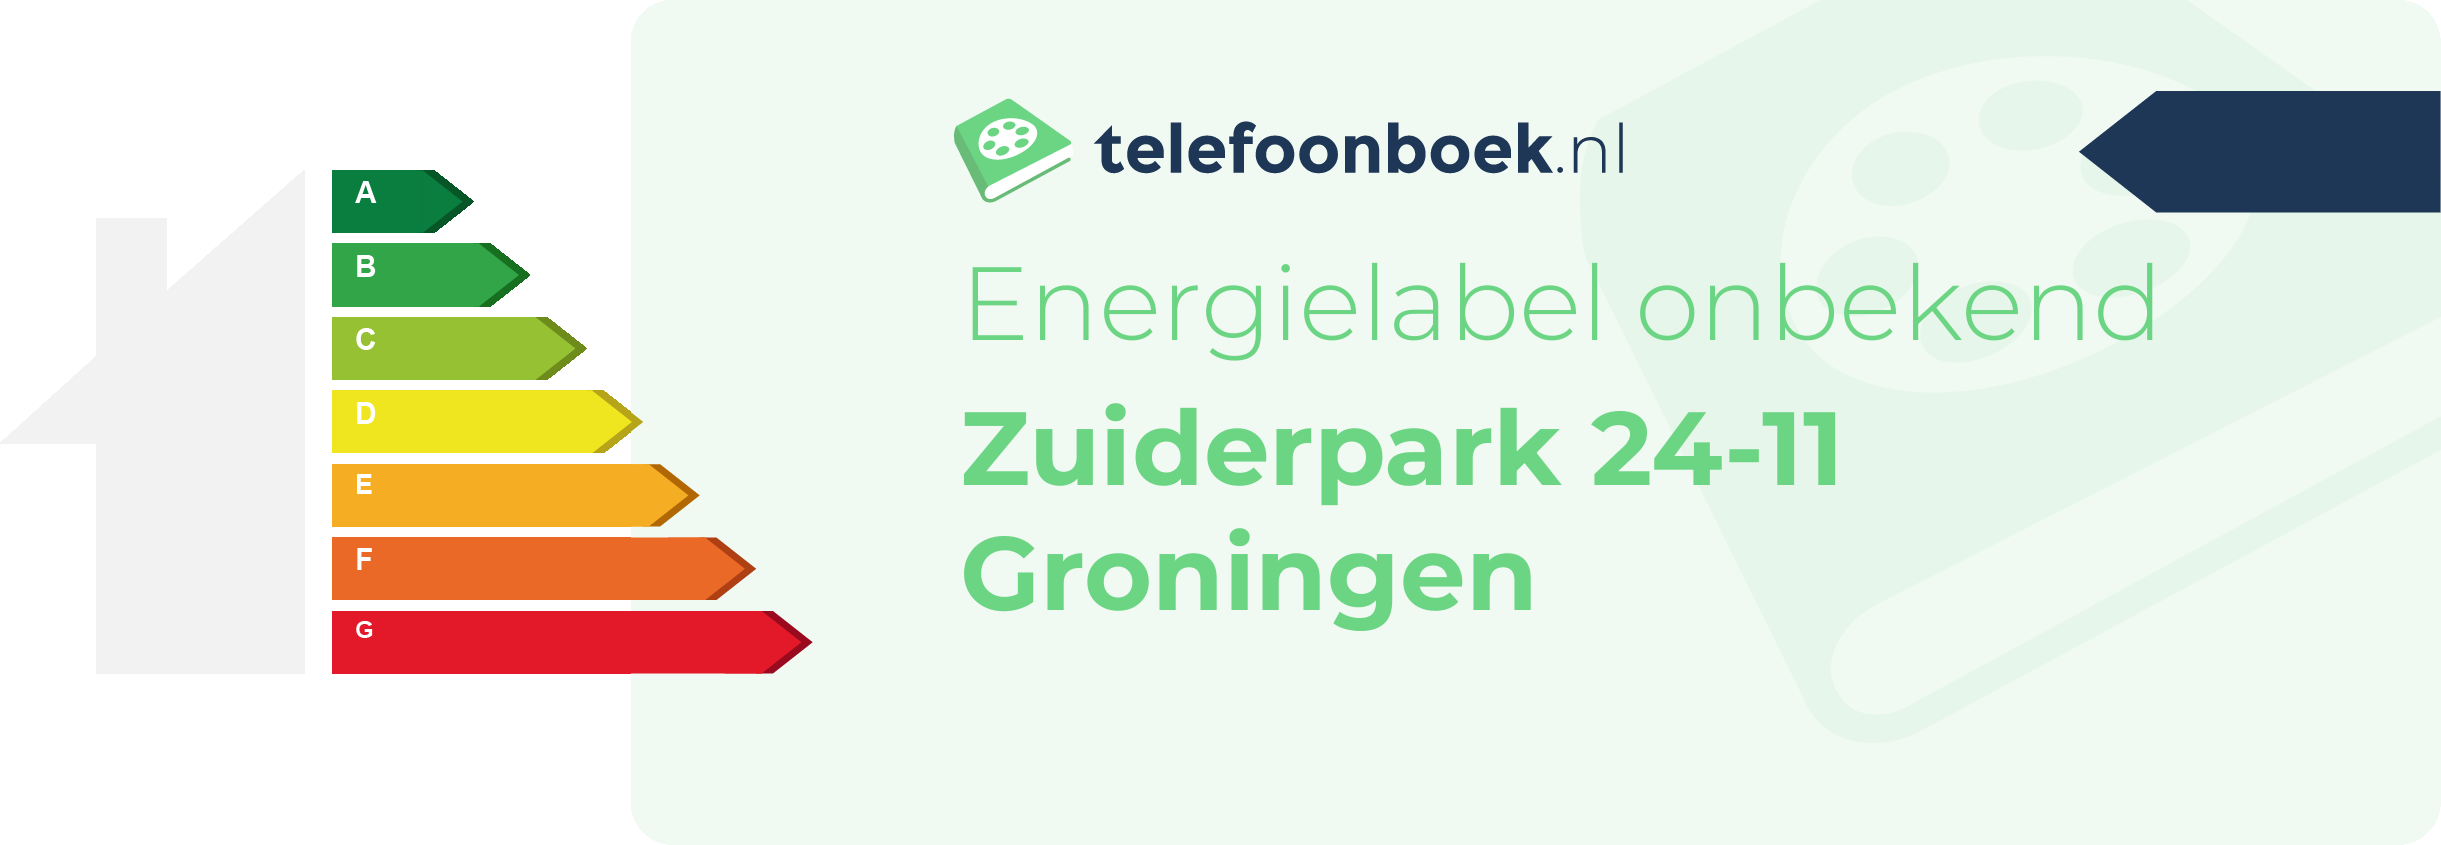 Energielabel Zuiderpark 24-11 Groningen